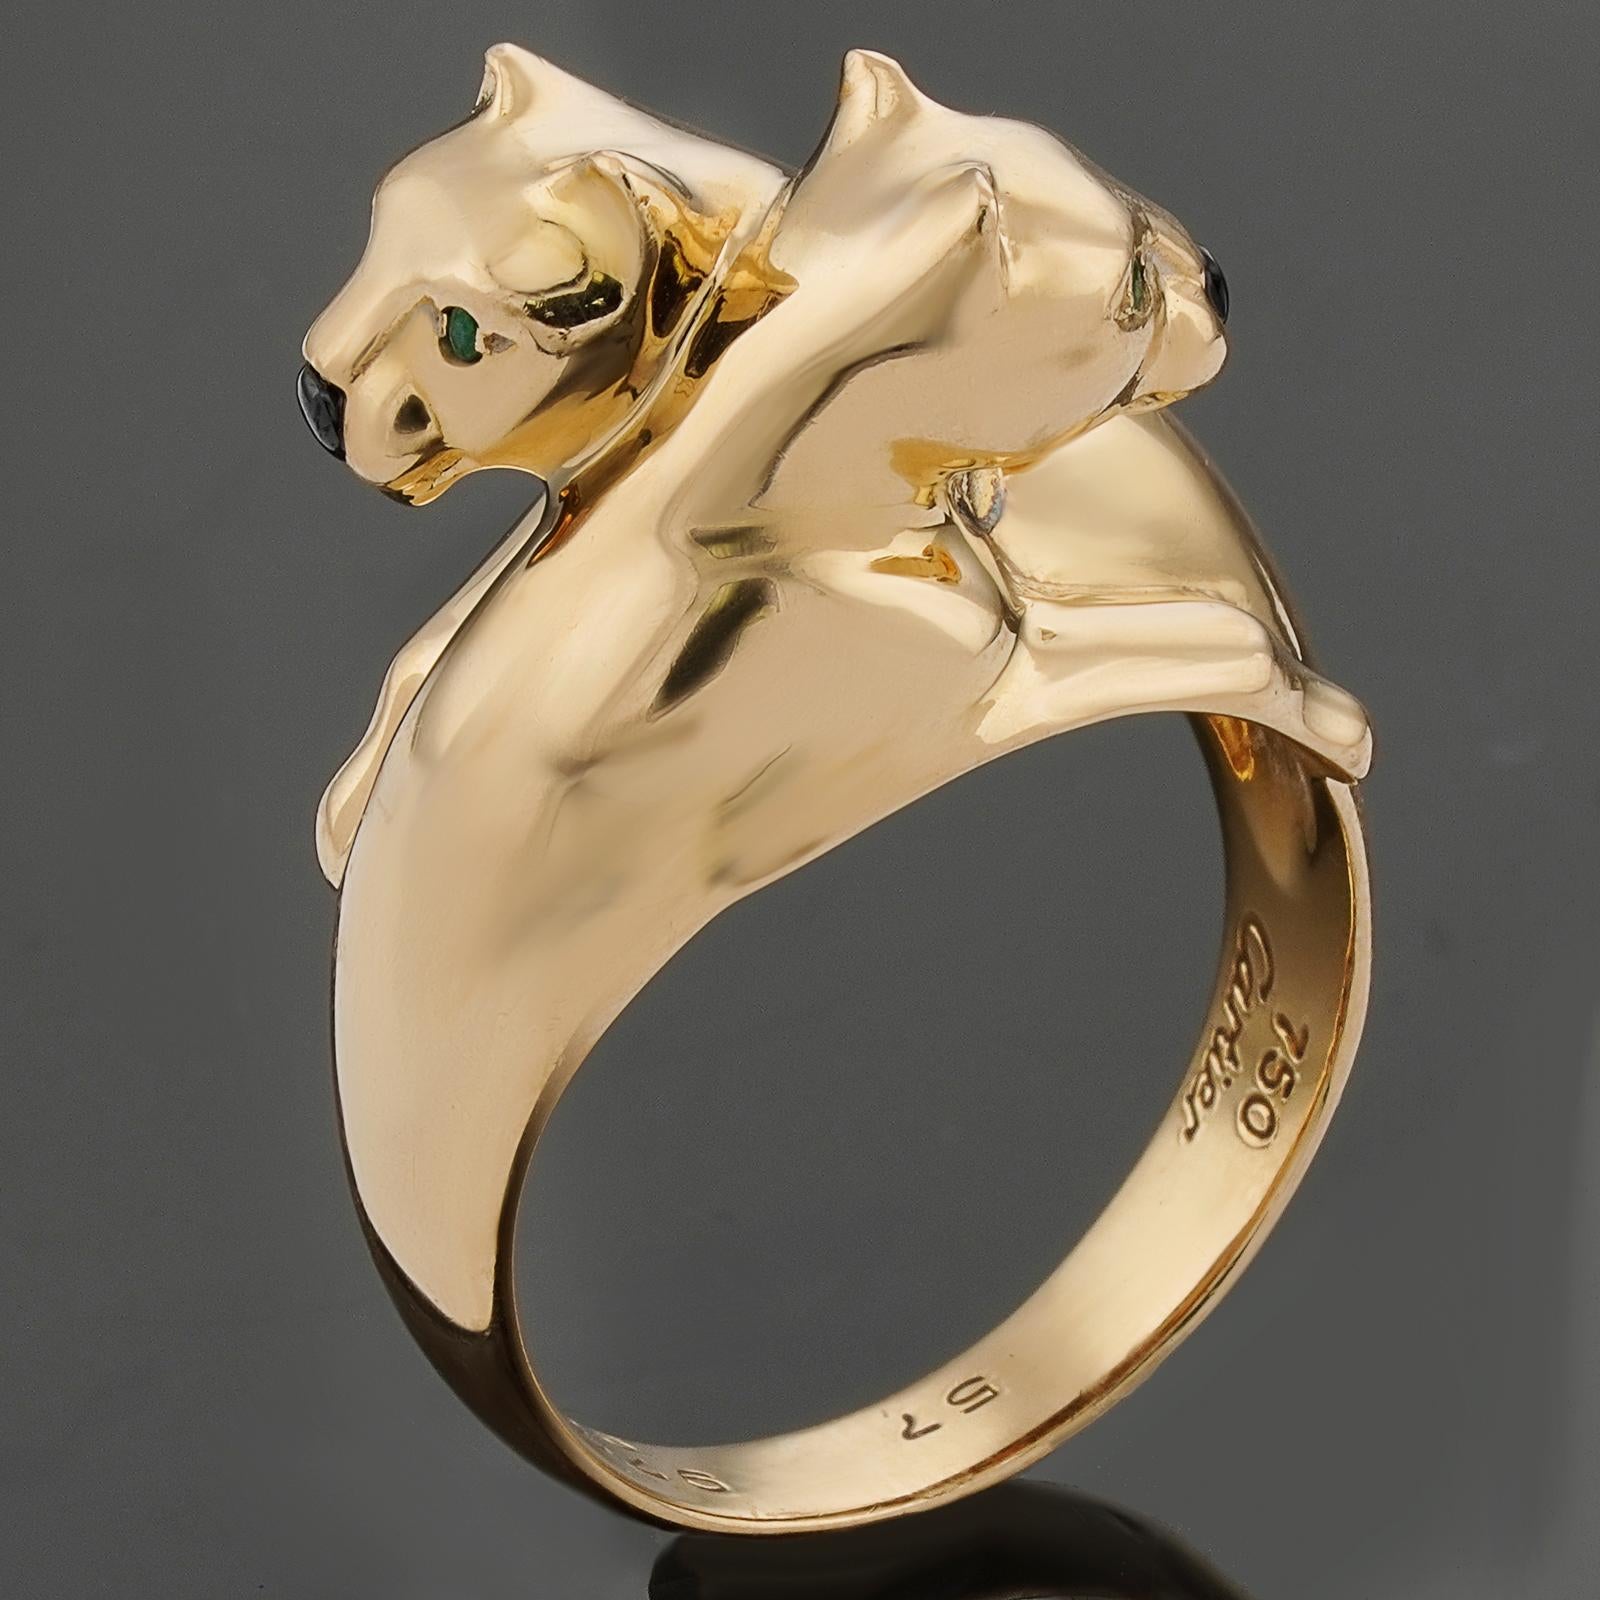 Dieser wunderschöne, authentische Cartier-Ring aus der kultigen Panthere de Cartier Collection ist aus 18 Karat Gelbgold gefertigt und zeigt ein ineinander verschlungenes Doppelpantherkopf-Design, das mit einer schwarzen Onyxnase und grünen